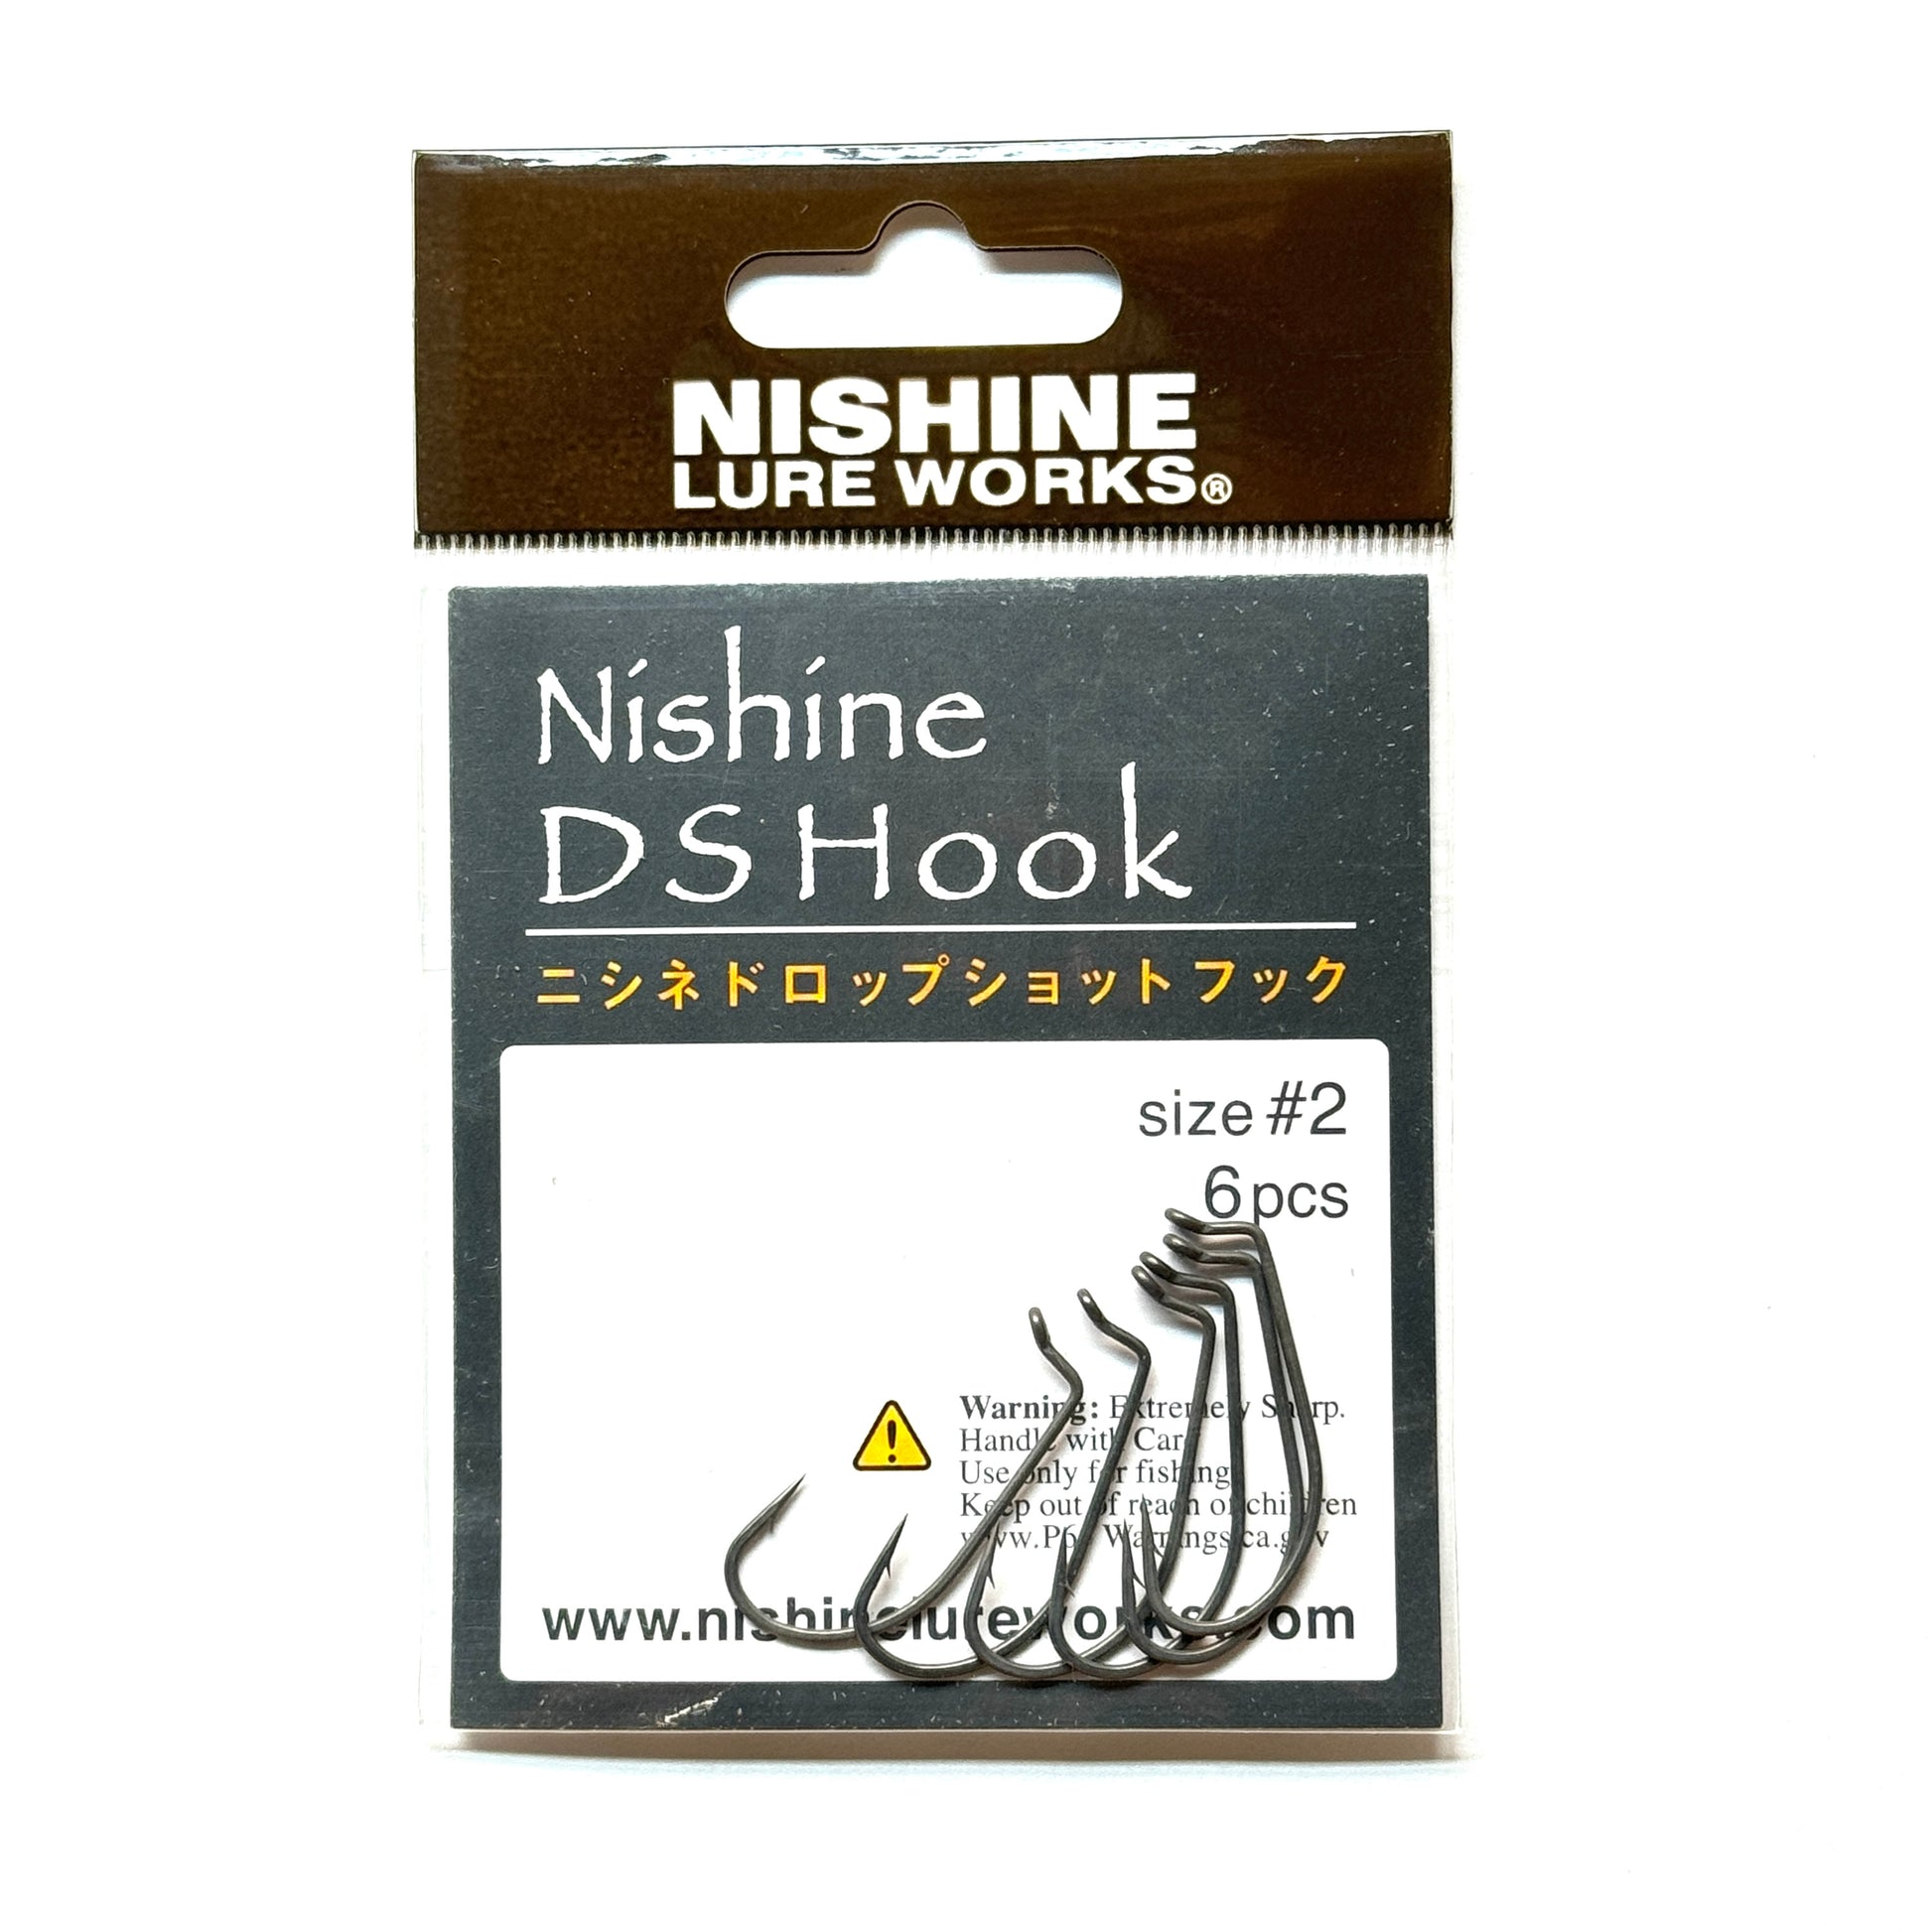 Nishine DS Hook – Nishine Lure Works